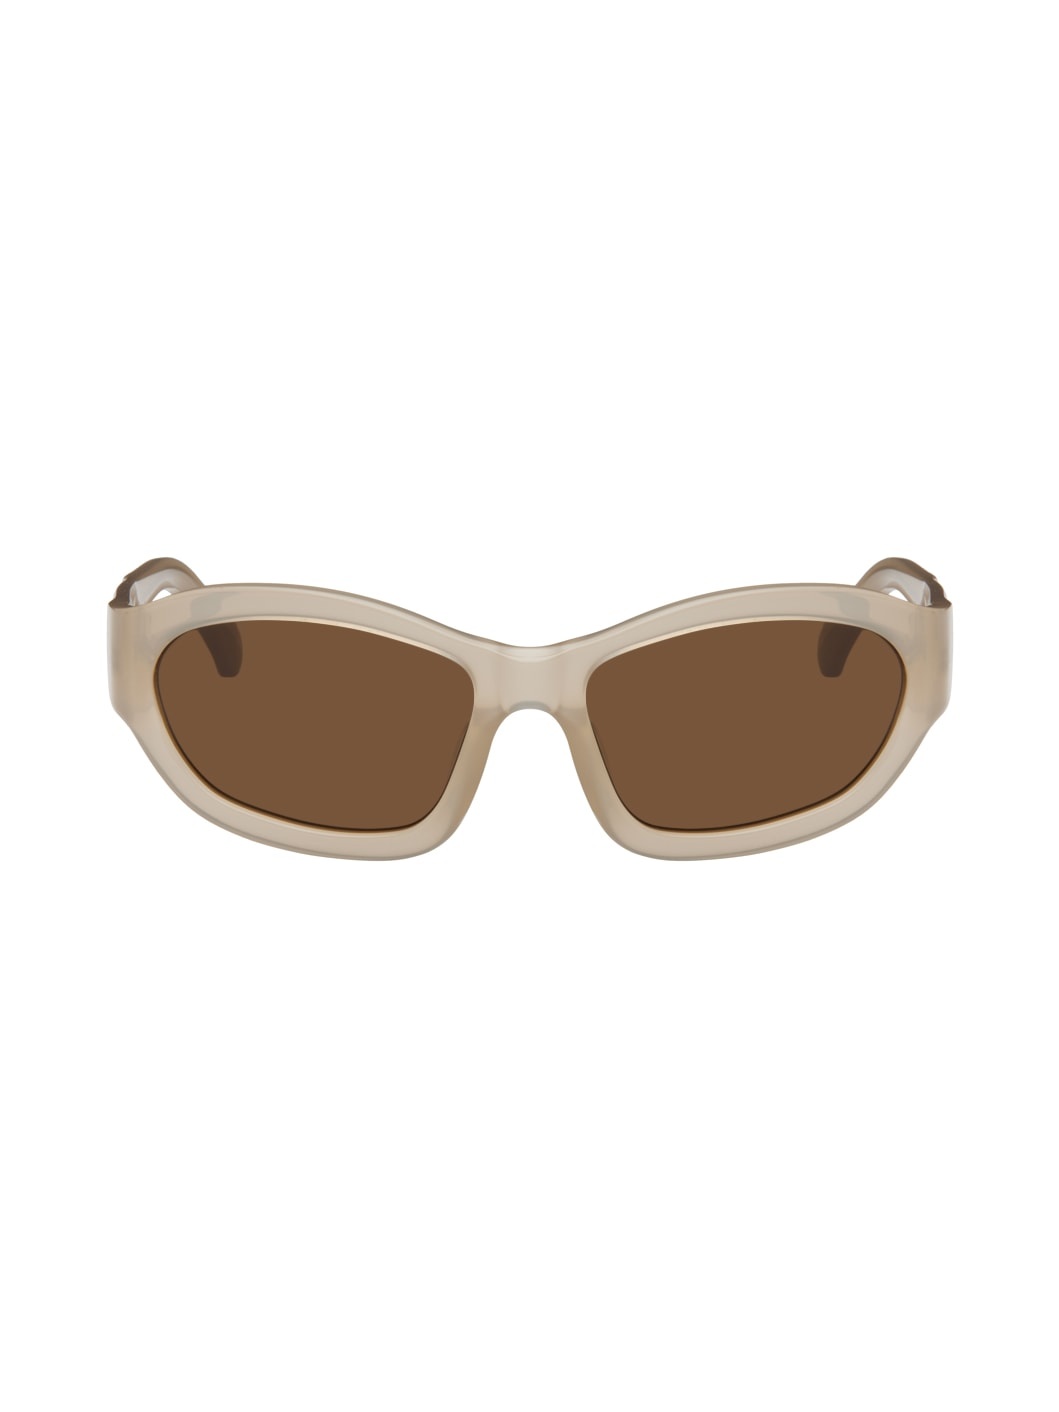 Taupe Linda Farrow Edition Goggle Sunglasses - 1